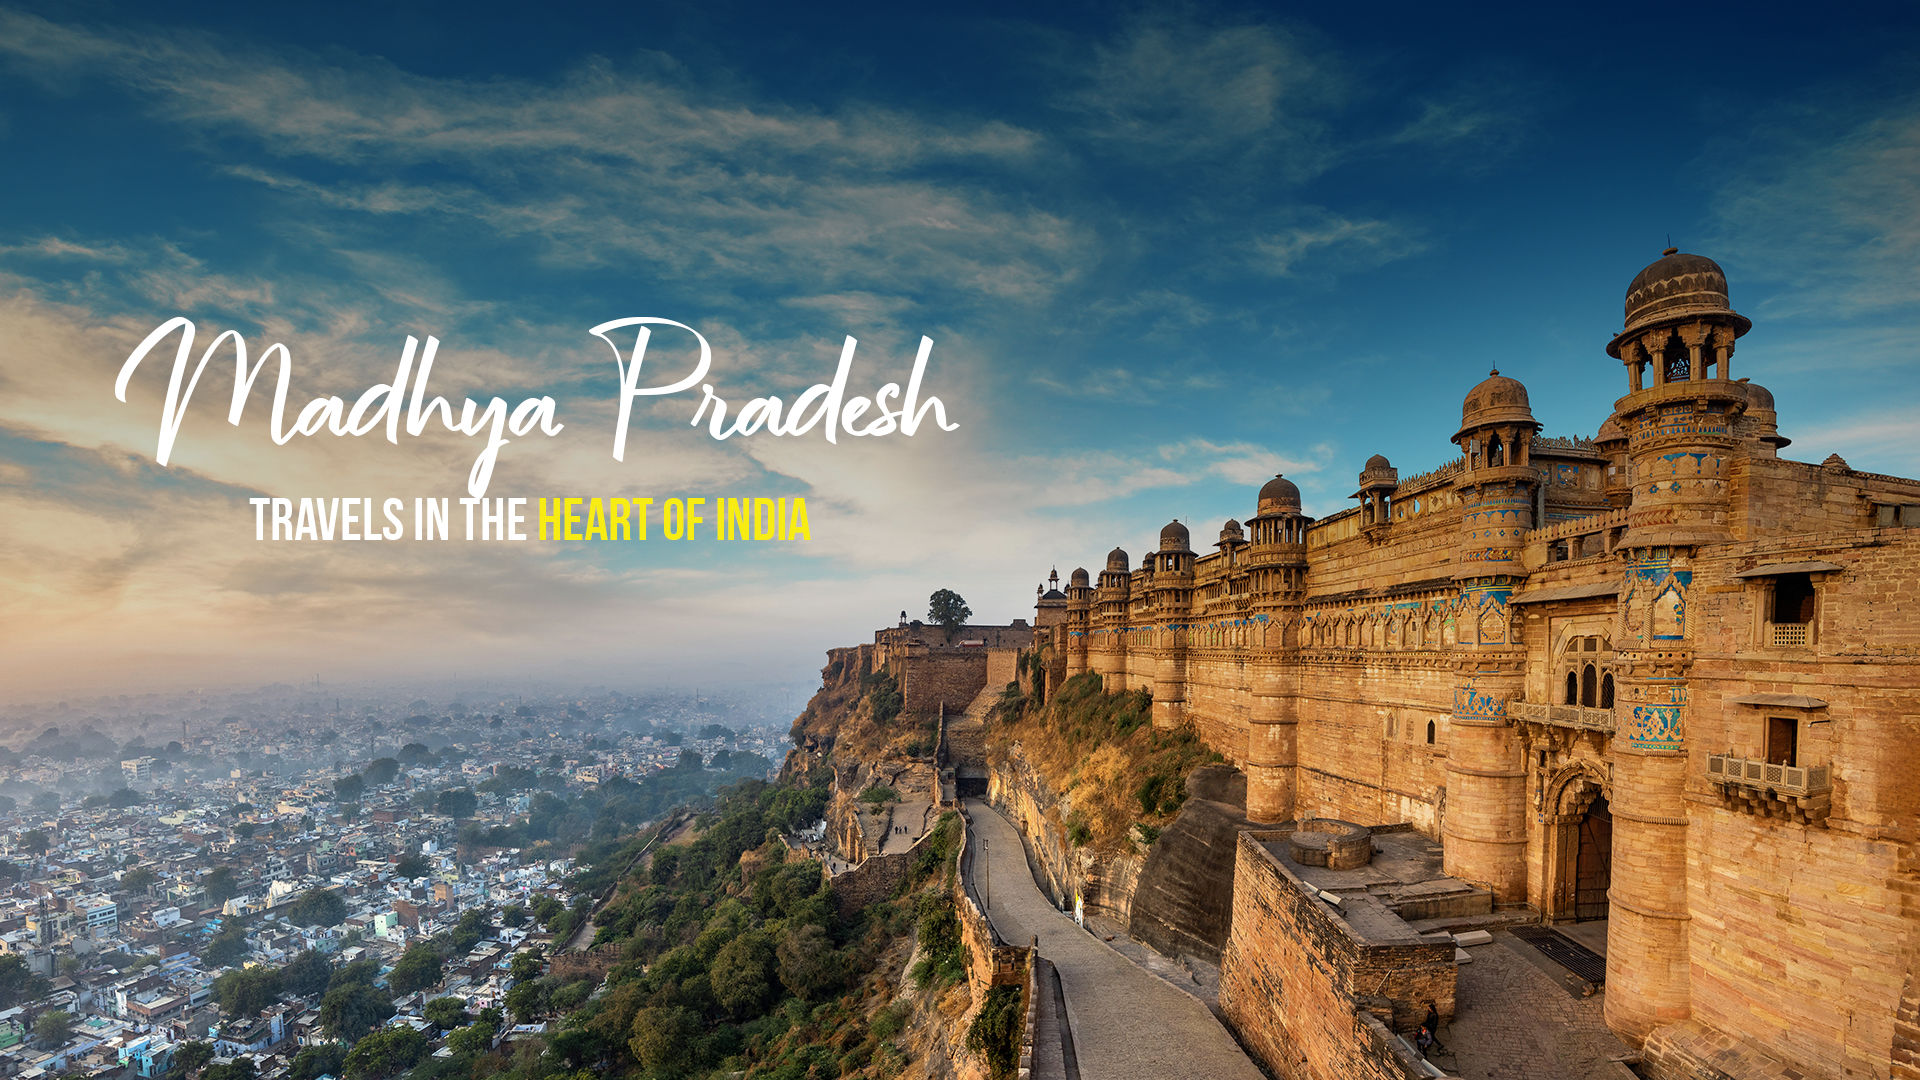 Tour of Madhya Pradesh